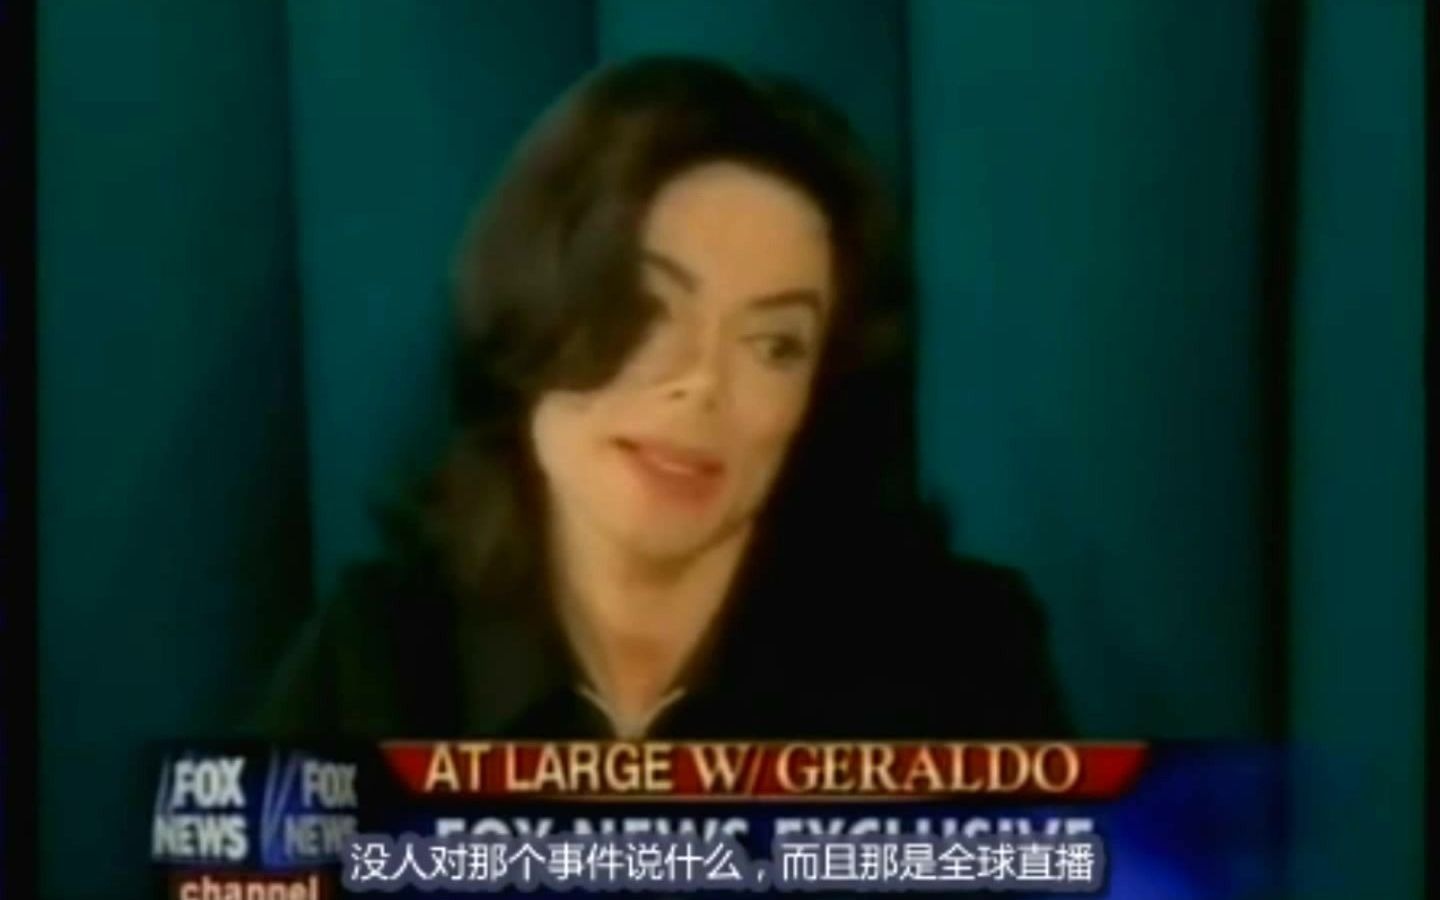 迈克尔·杰克逊-2005年采访时谈妹妹珍妮·杰克逊超级碗事件-中文字幕